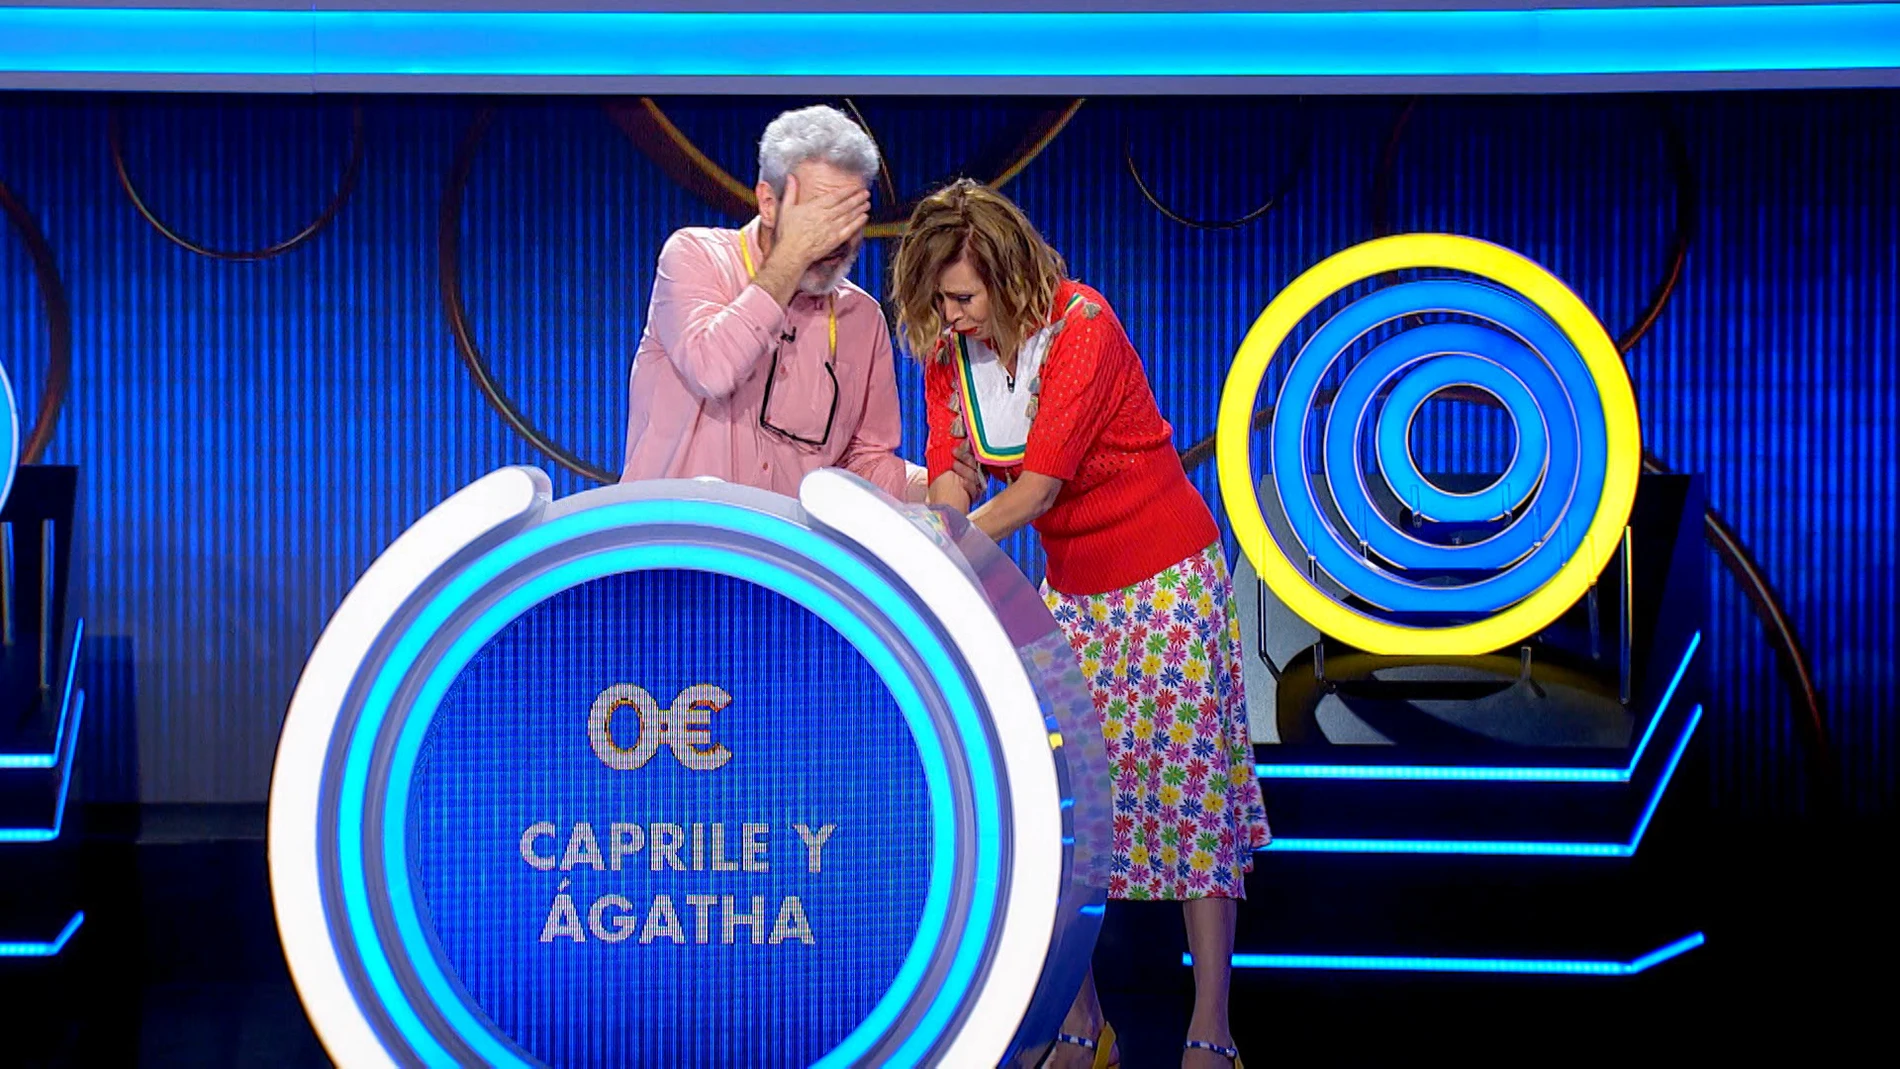 El cabezazo de Lorenzo Caprile y Ágatha Ruiz de la Prada ante la euforia por jugar 